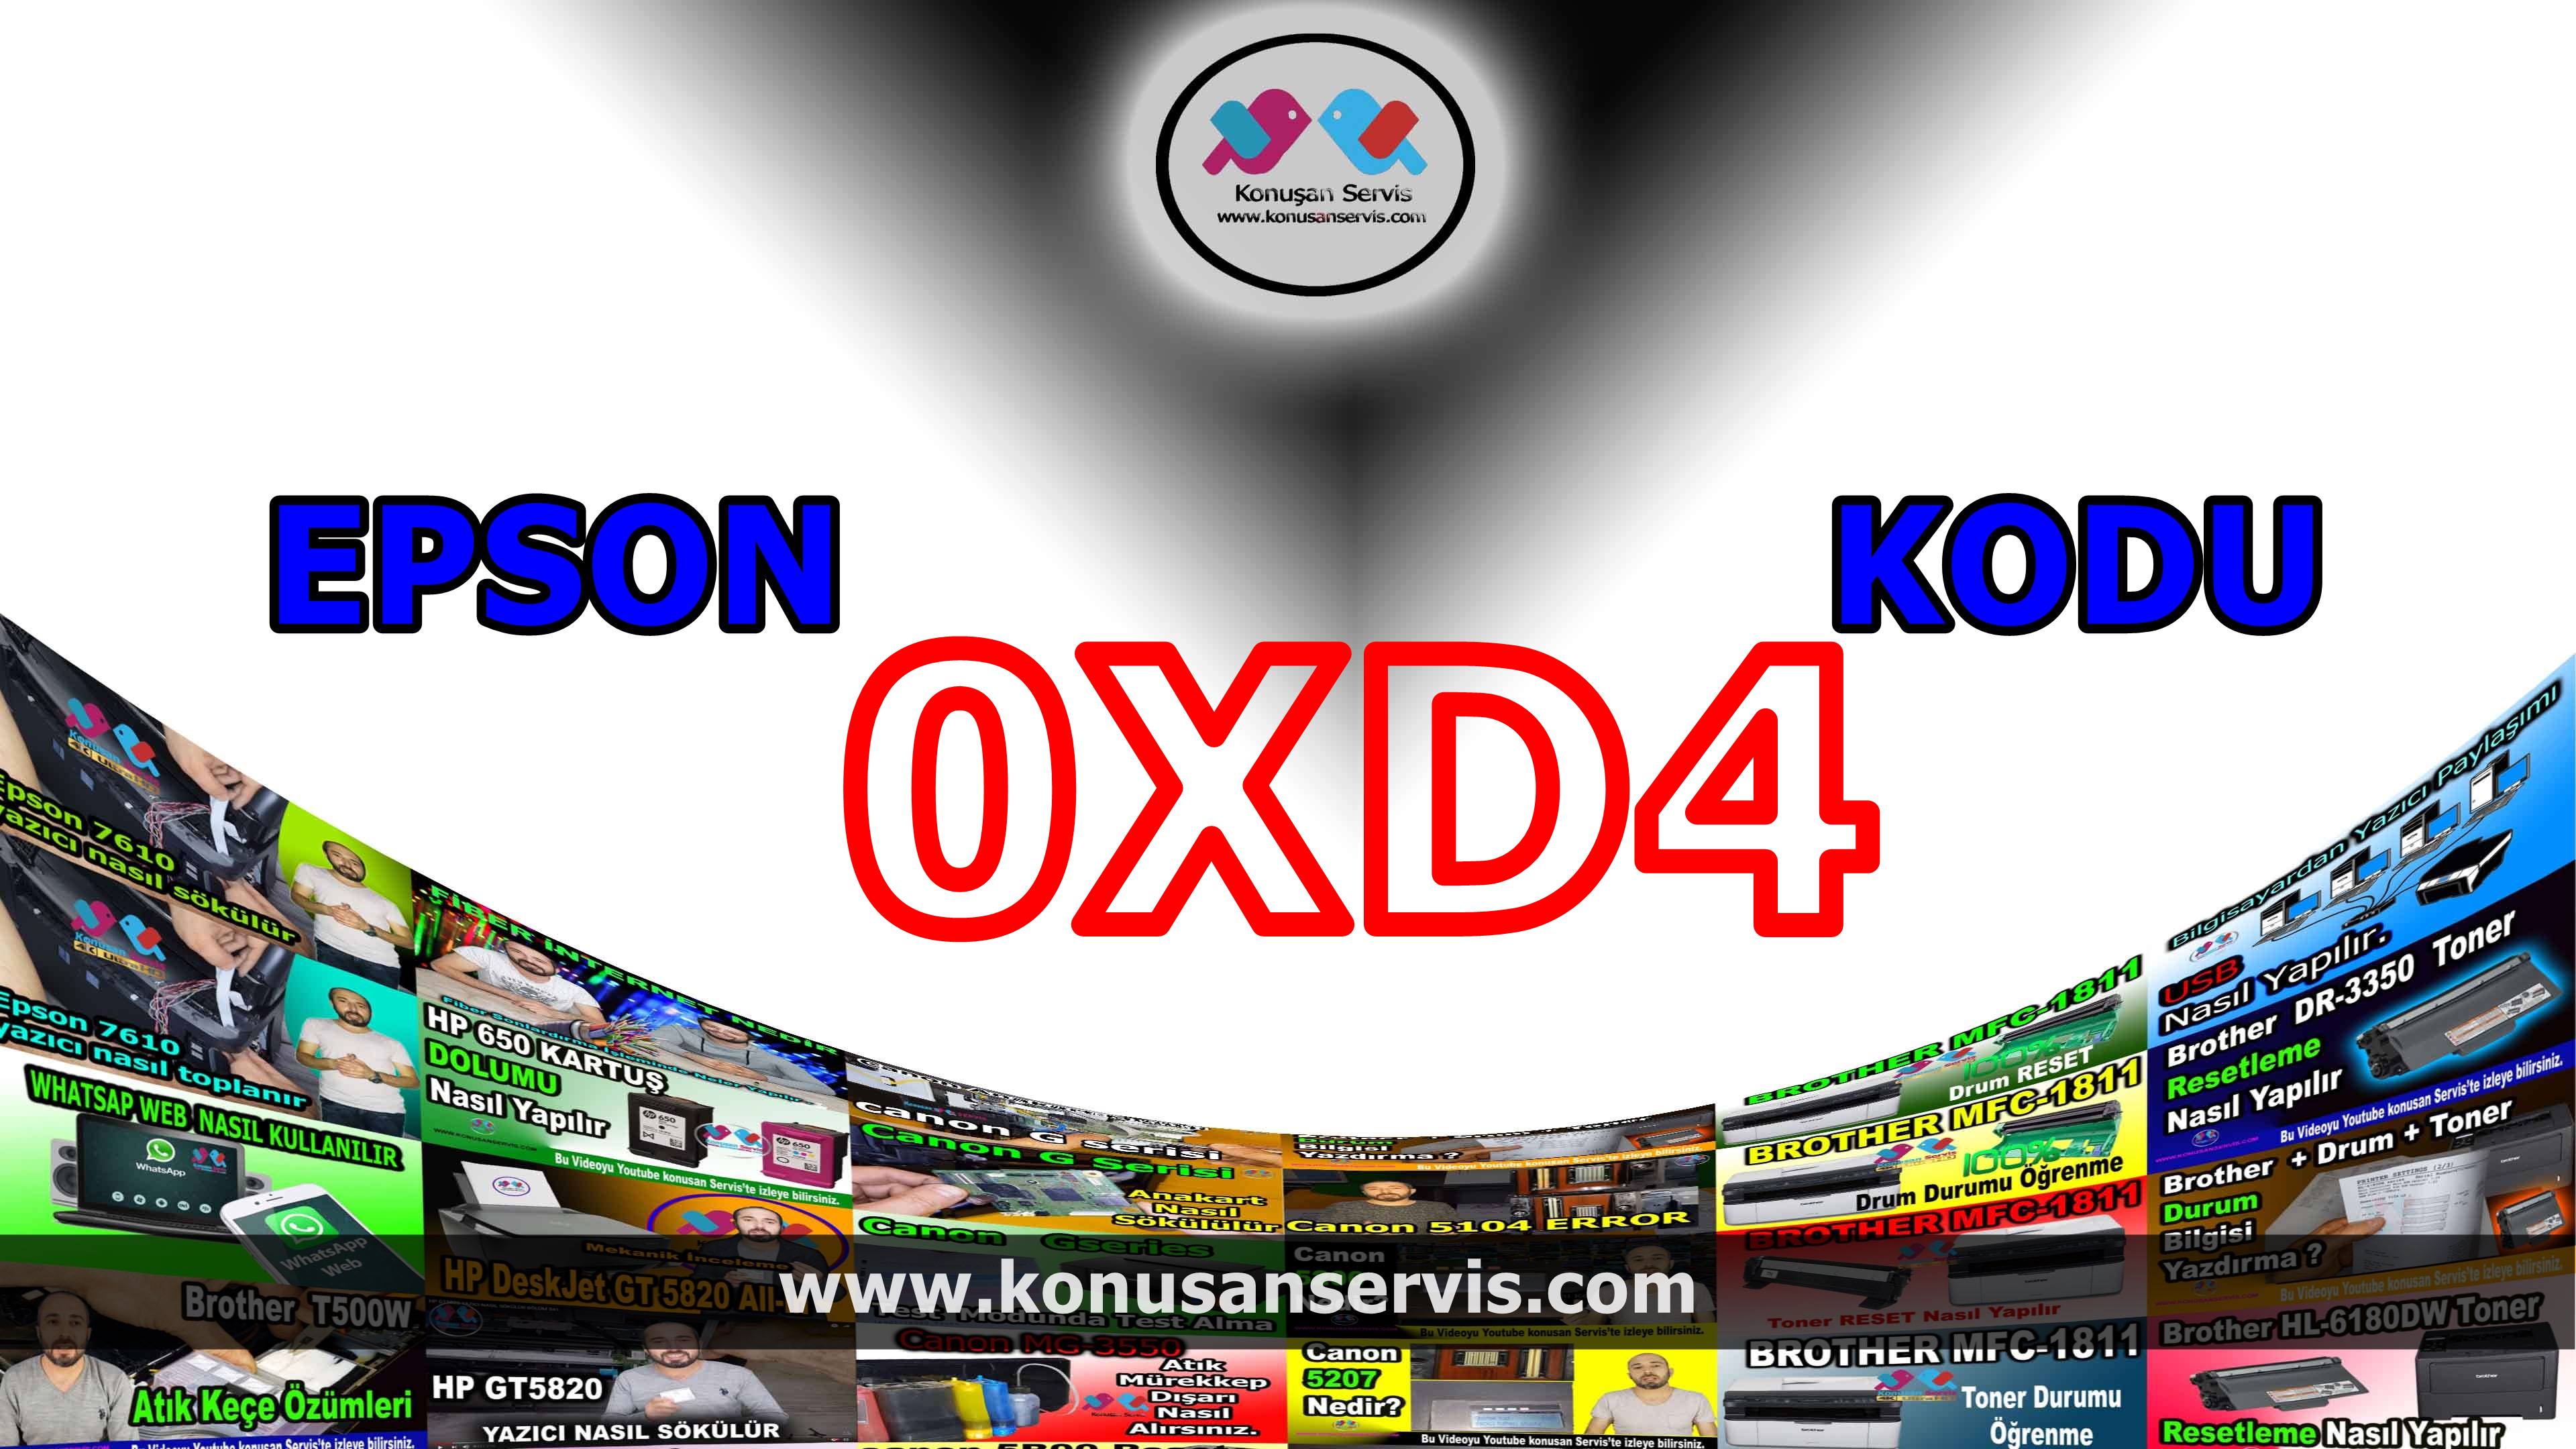 Epson 0xD4 Hata Kodlari Ve Çözümleri Epson Teknik Bilgi